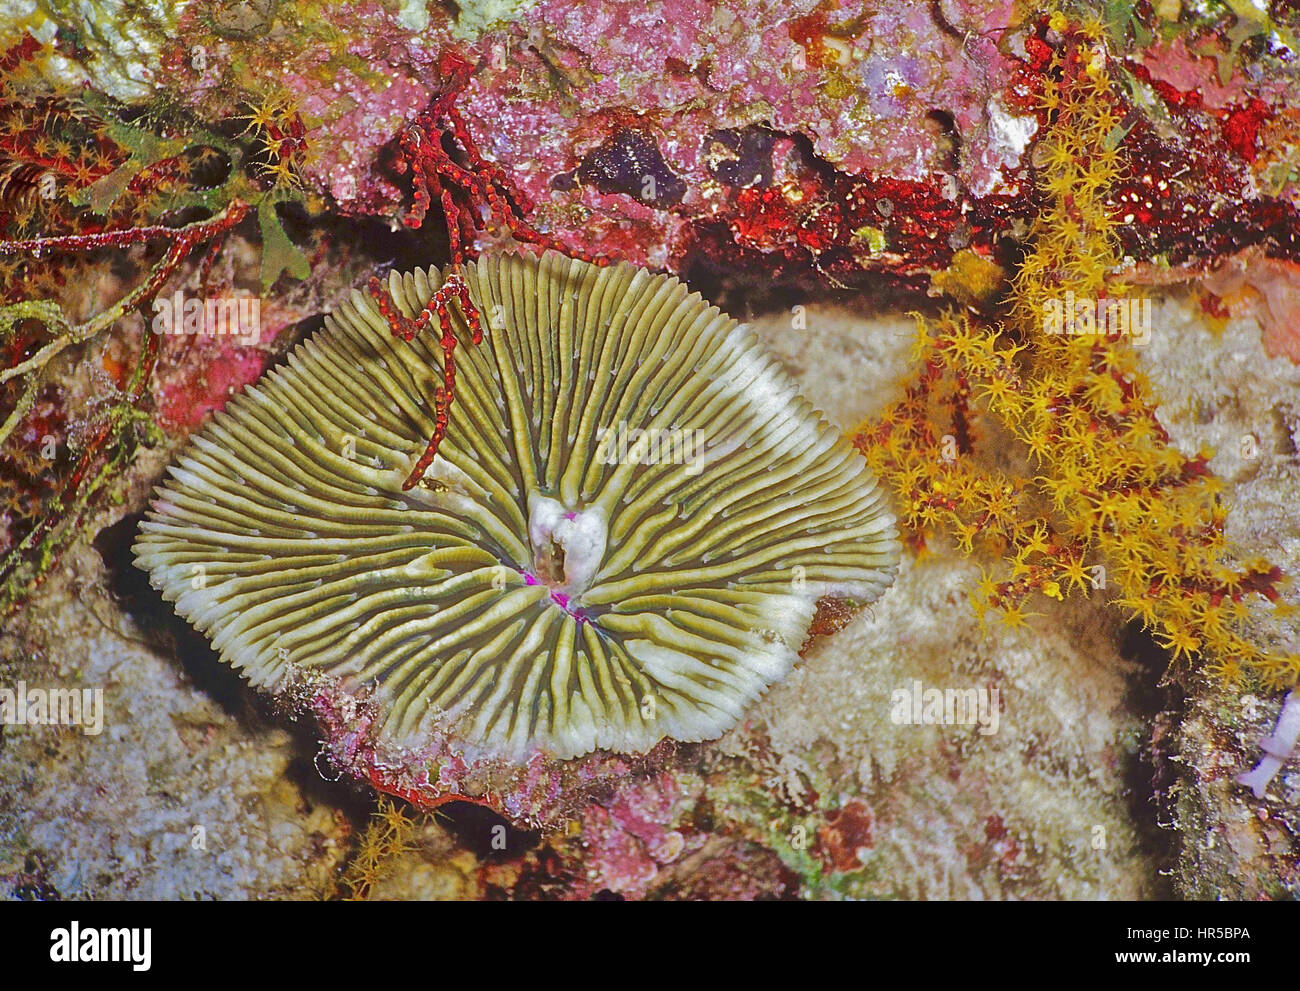 Il nome scientifico di questo round di corallo duro (Fungia granulosa) è apt: sembra che il lato inferiore di un fungo. Soft Coral alimentazione a destra. Bali. Foto Stock